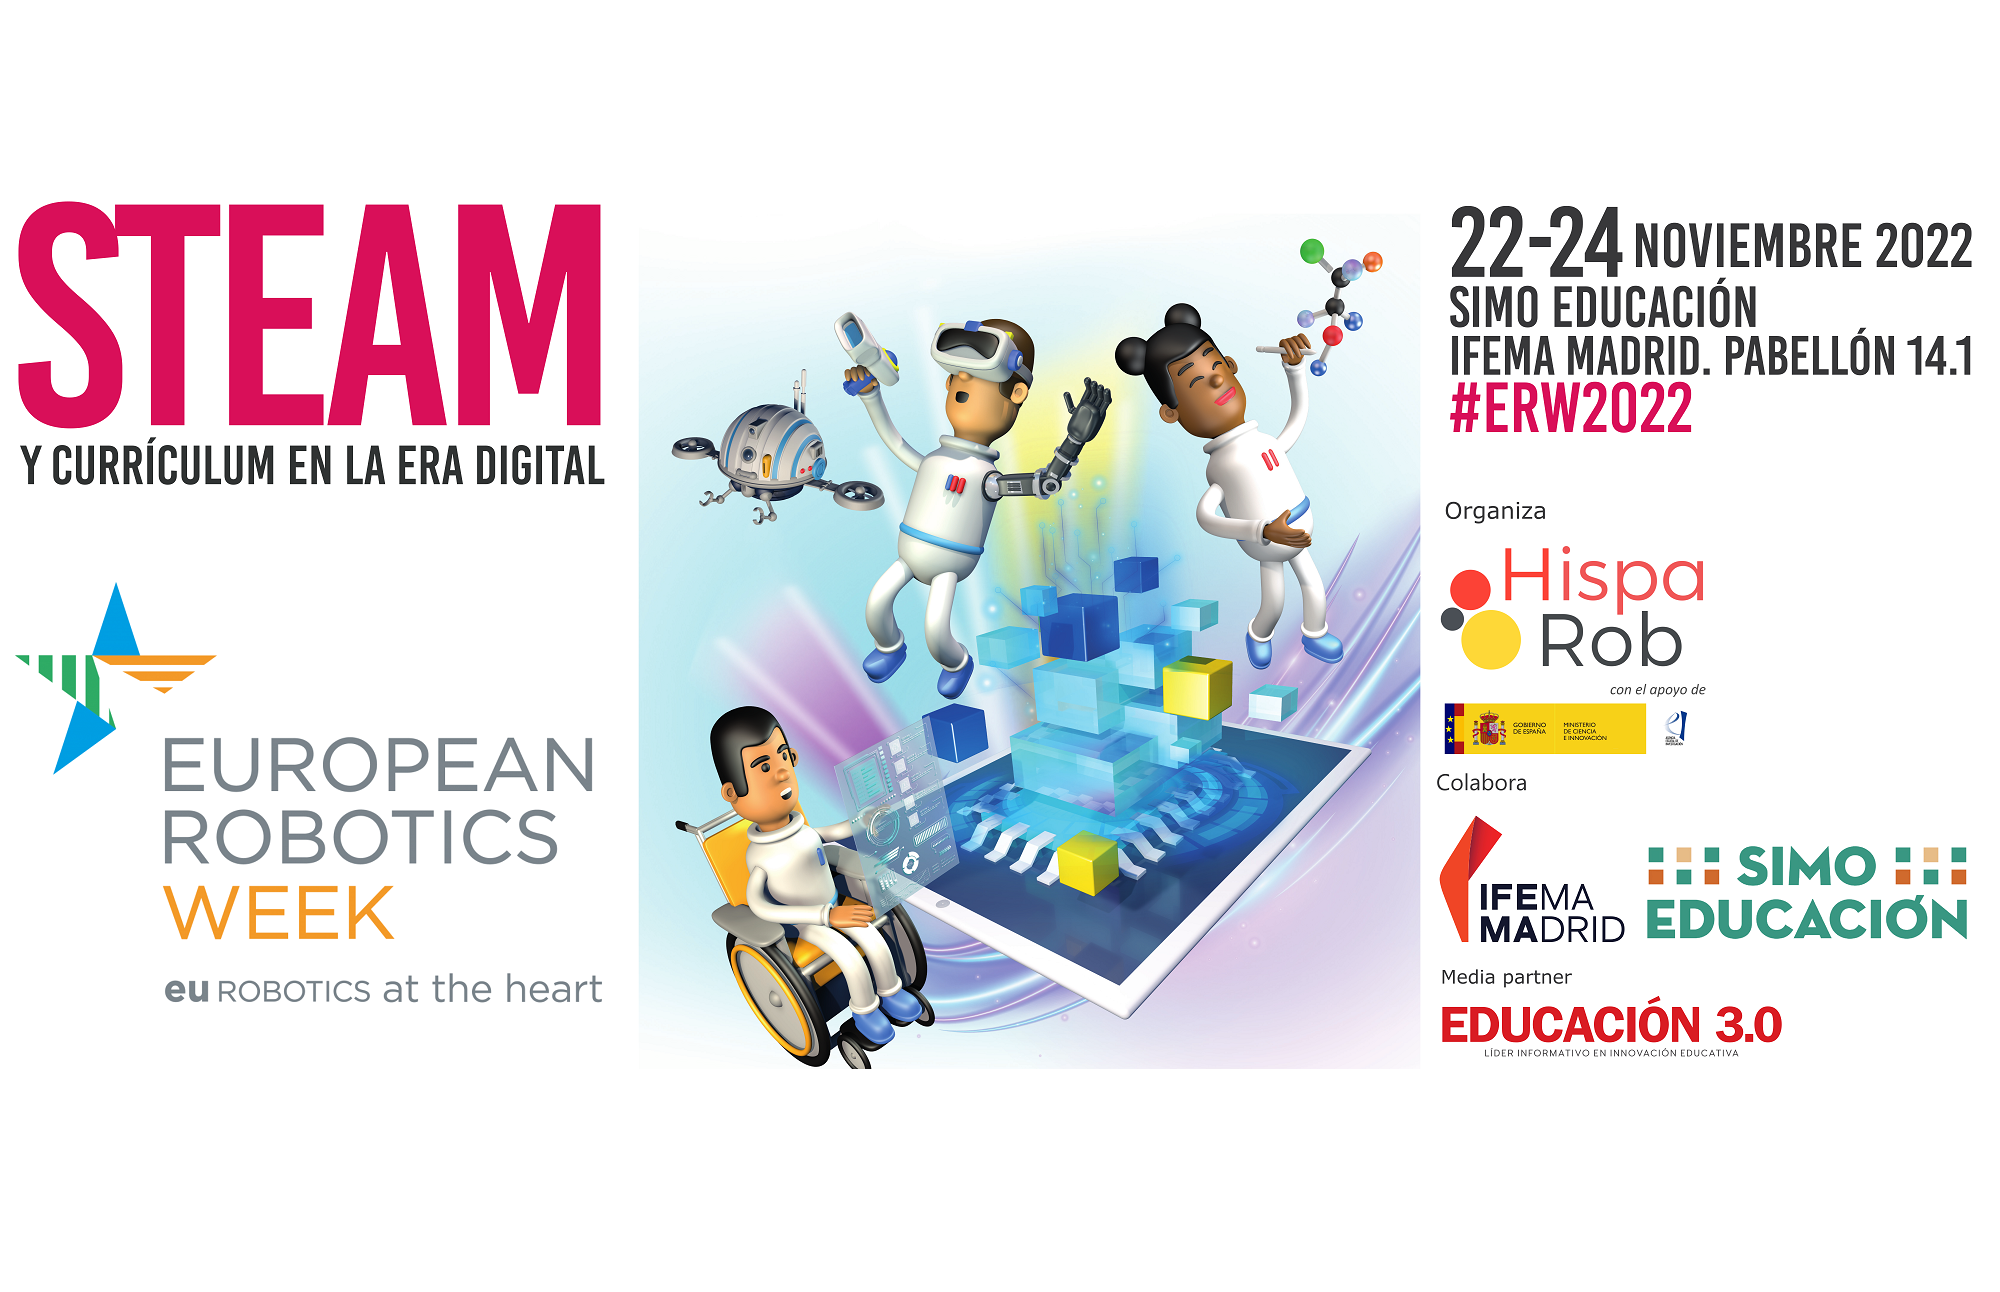 Presentamos el programa completo de la Jornada de HispaRob por la 12ª edición de la Semana Europea de la Robótica, ERW2022